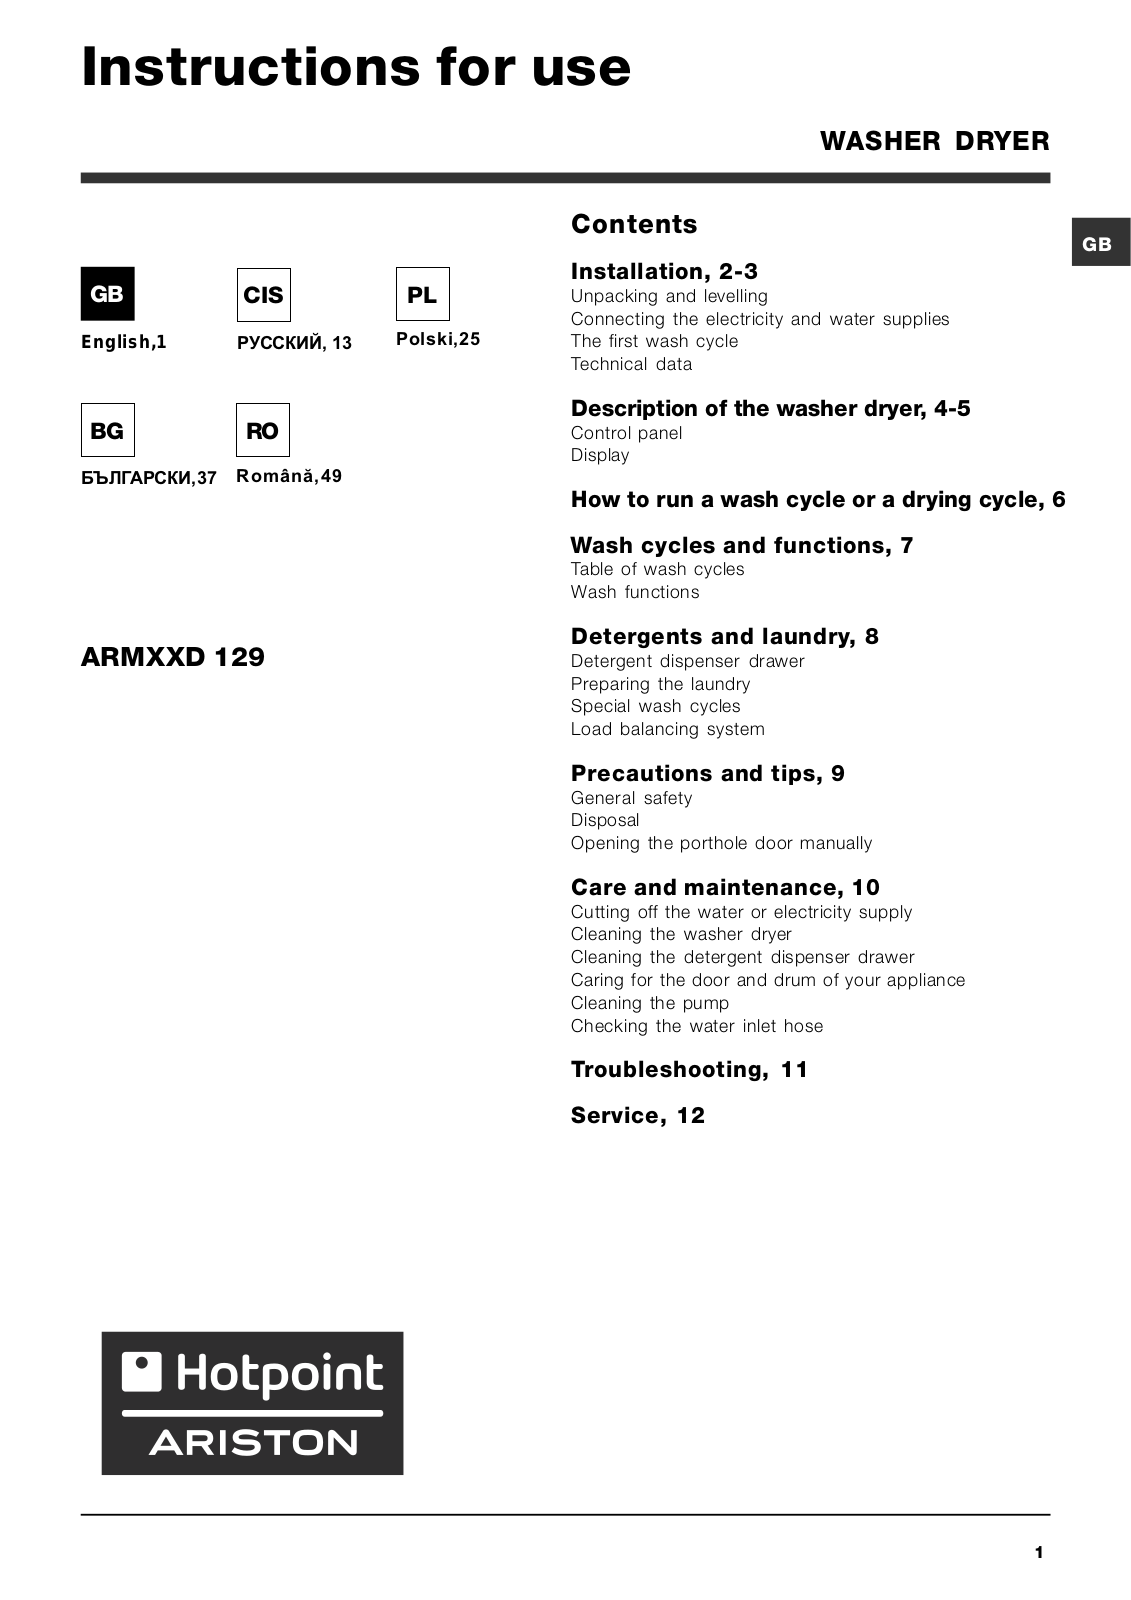 Hotpoint-ariston ARMXXD 129 User Manual